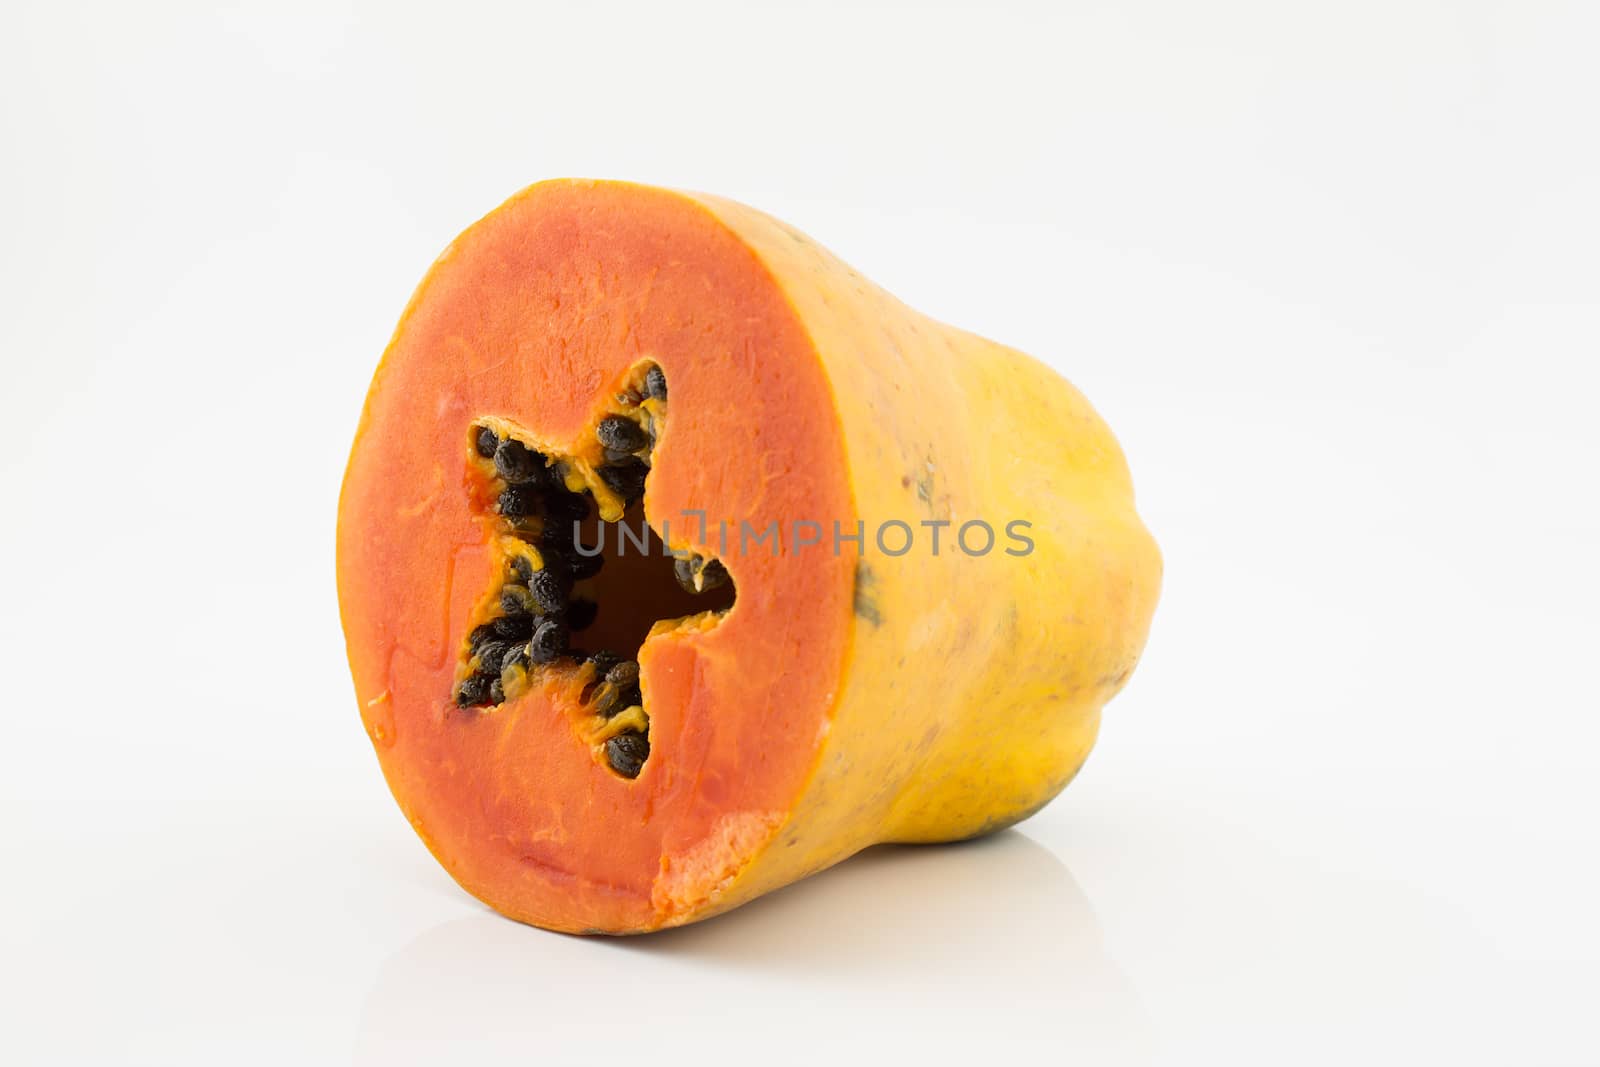 Papaya isolated on white backgorund